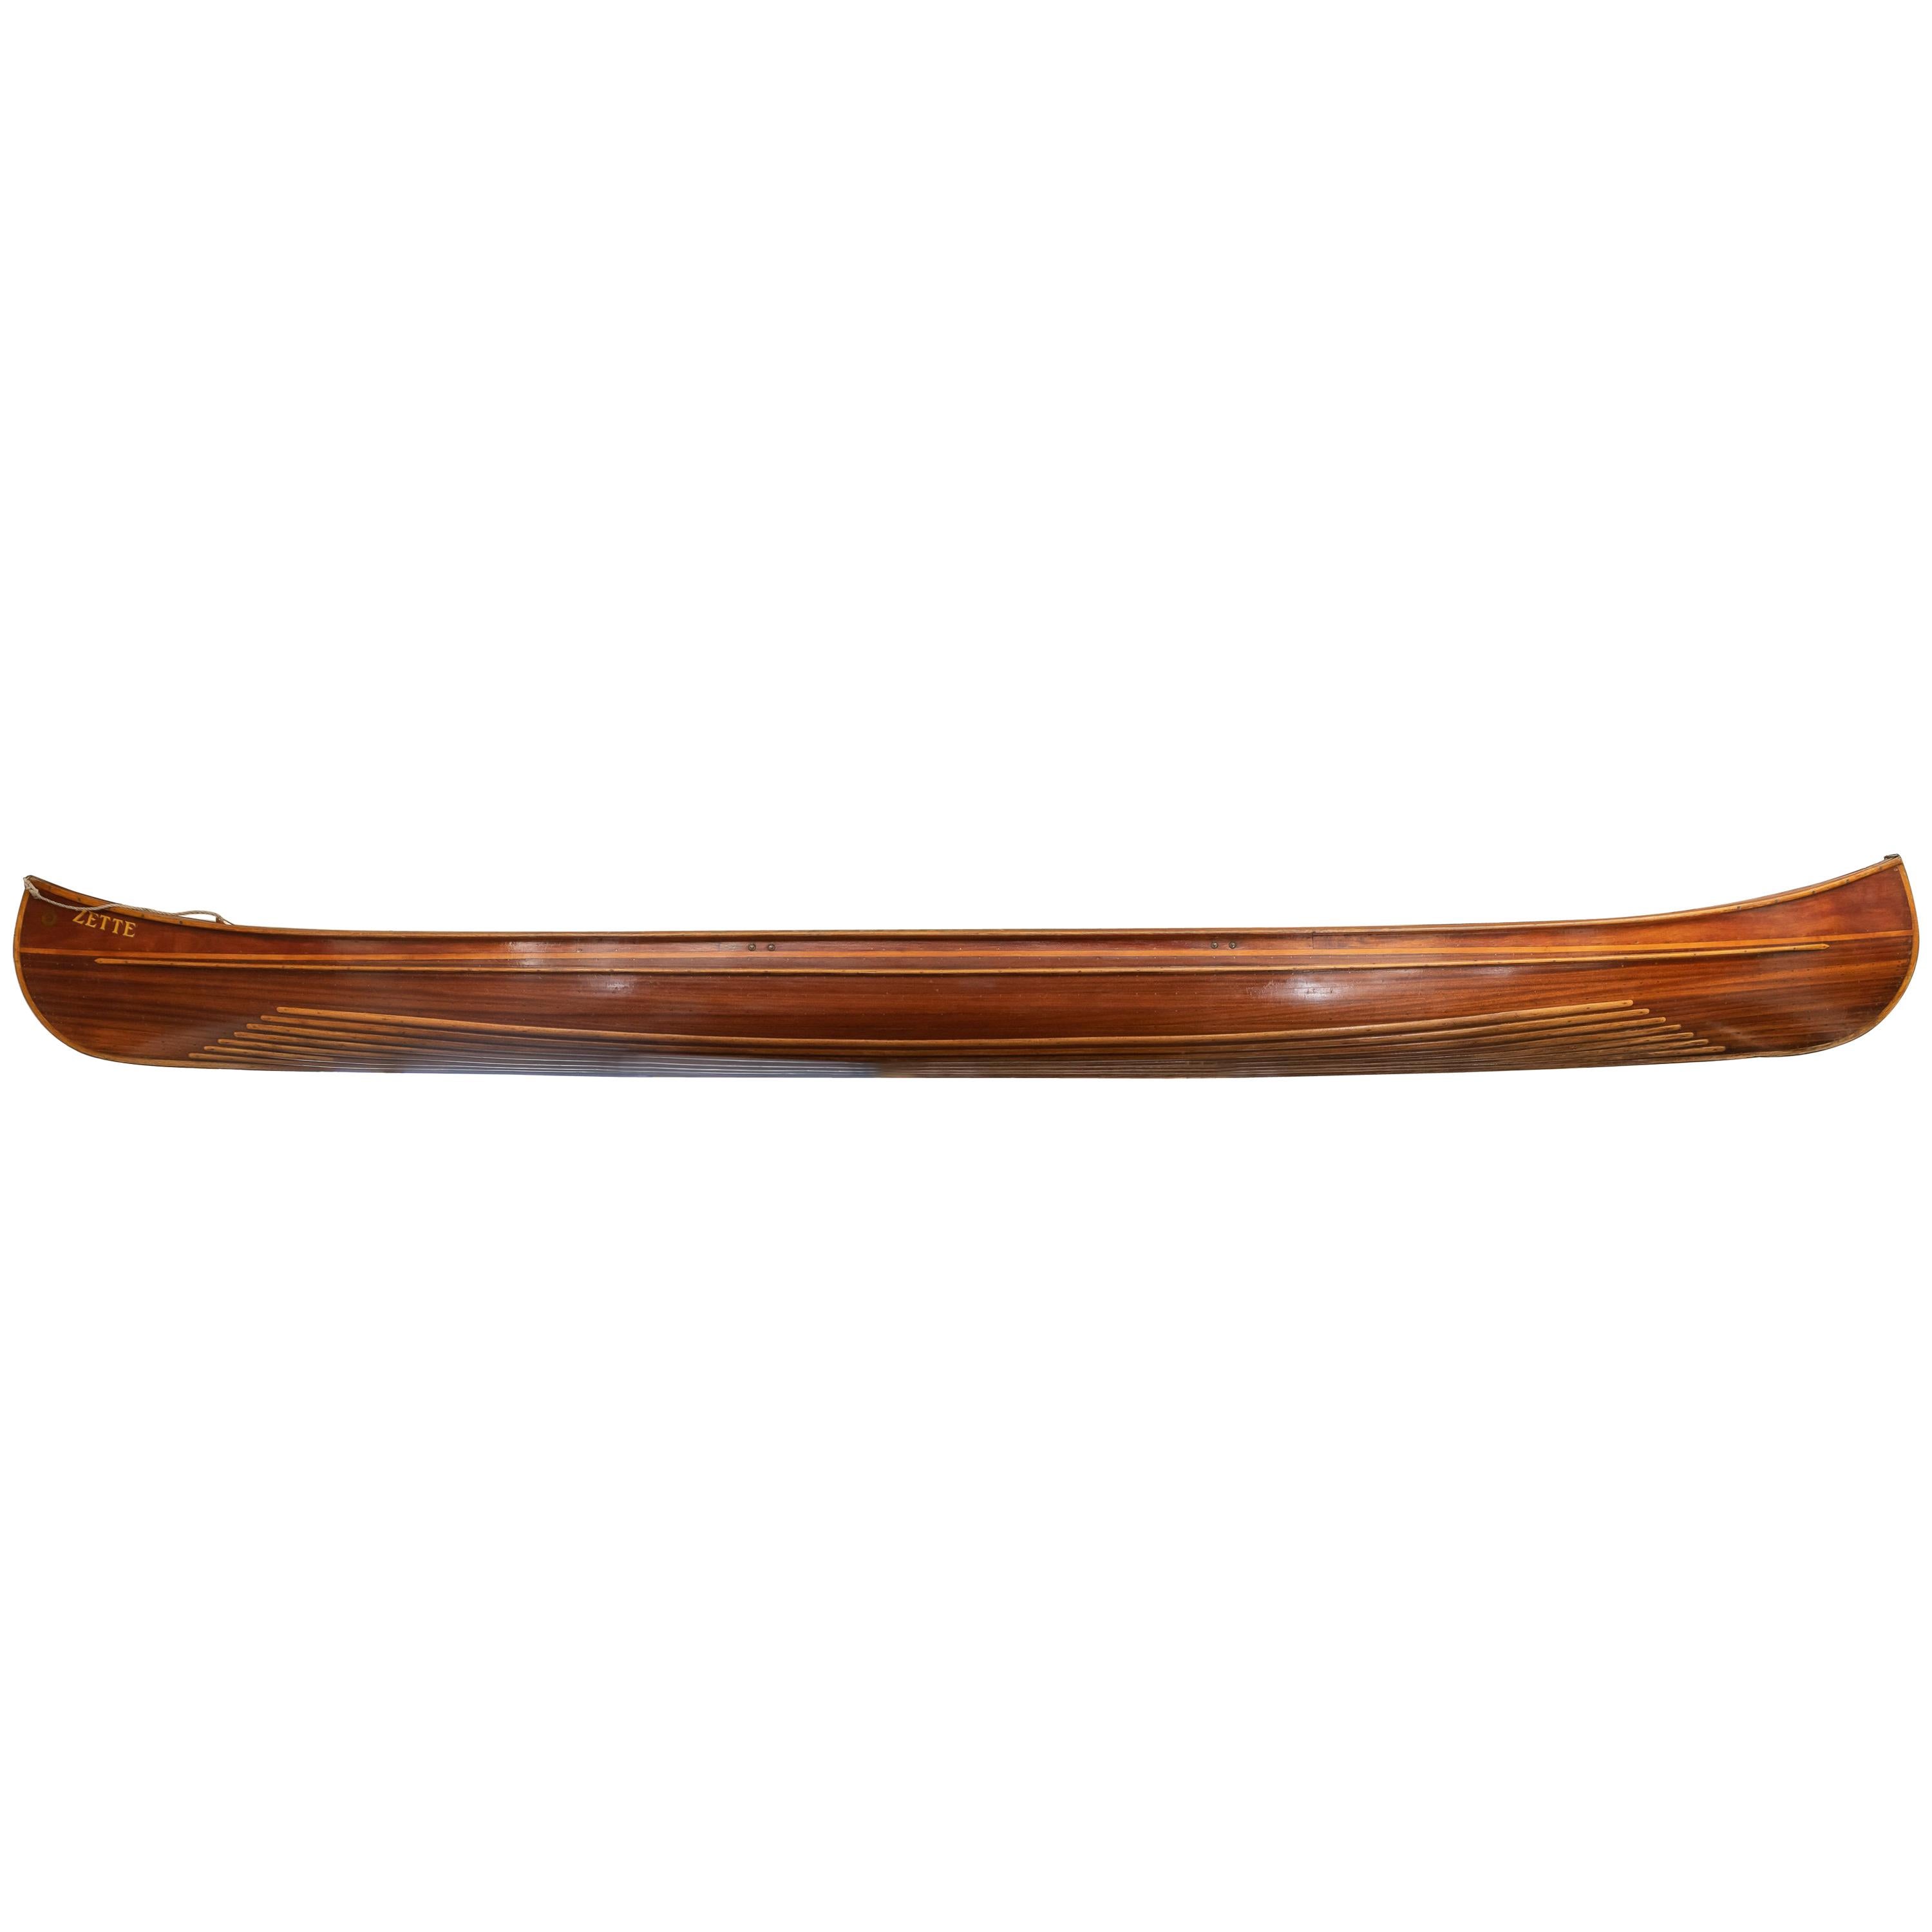 Canoë « Zette » en bois français finement fabriqué par Pierre Del Mez, Le Perreaux